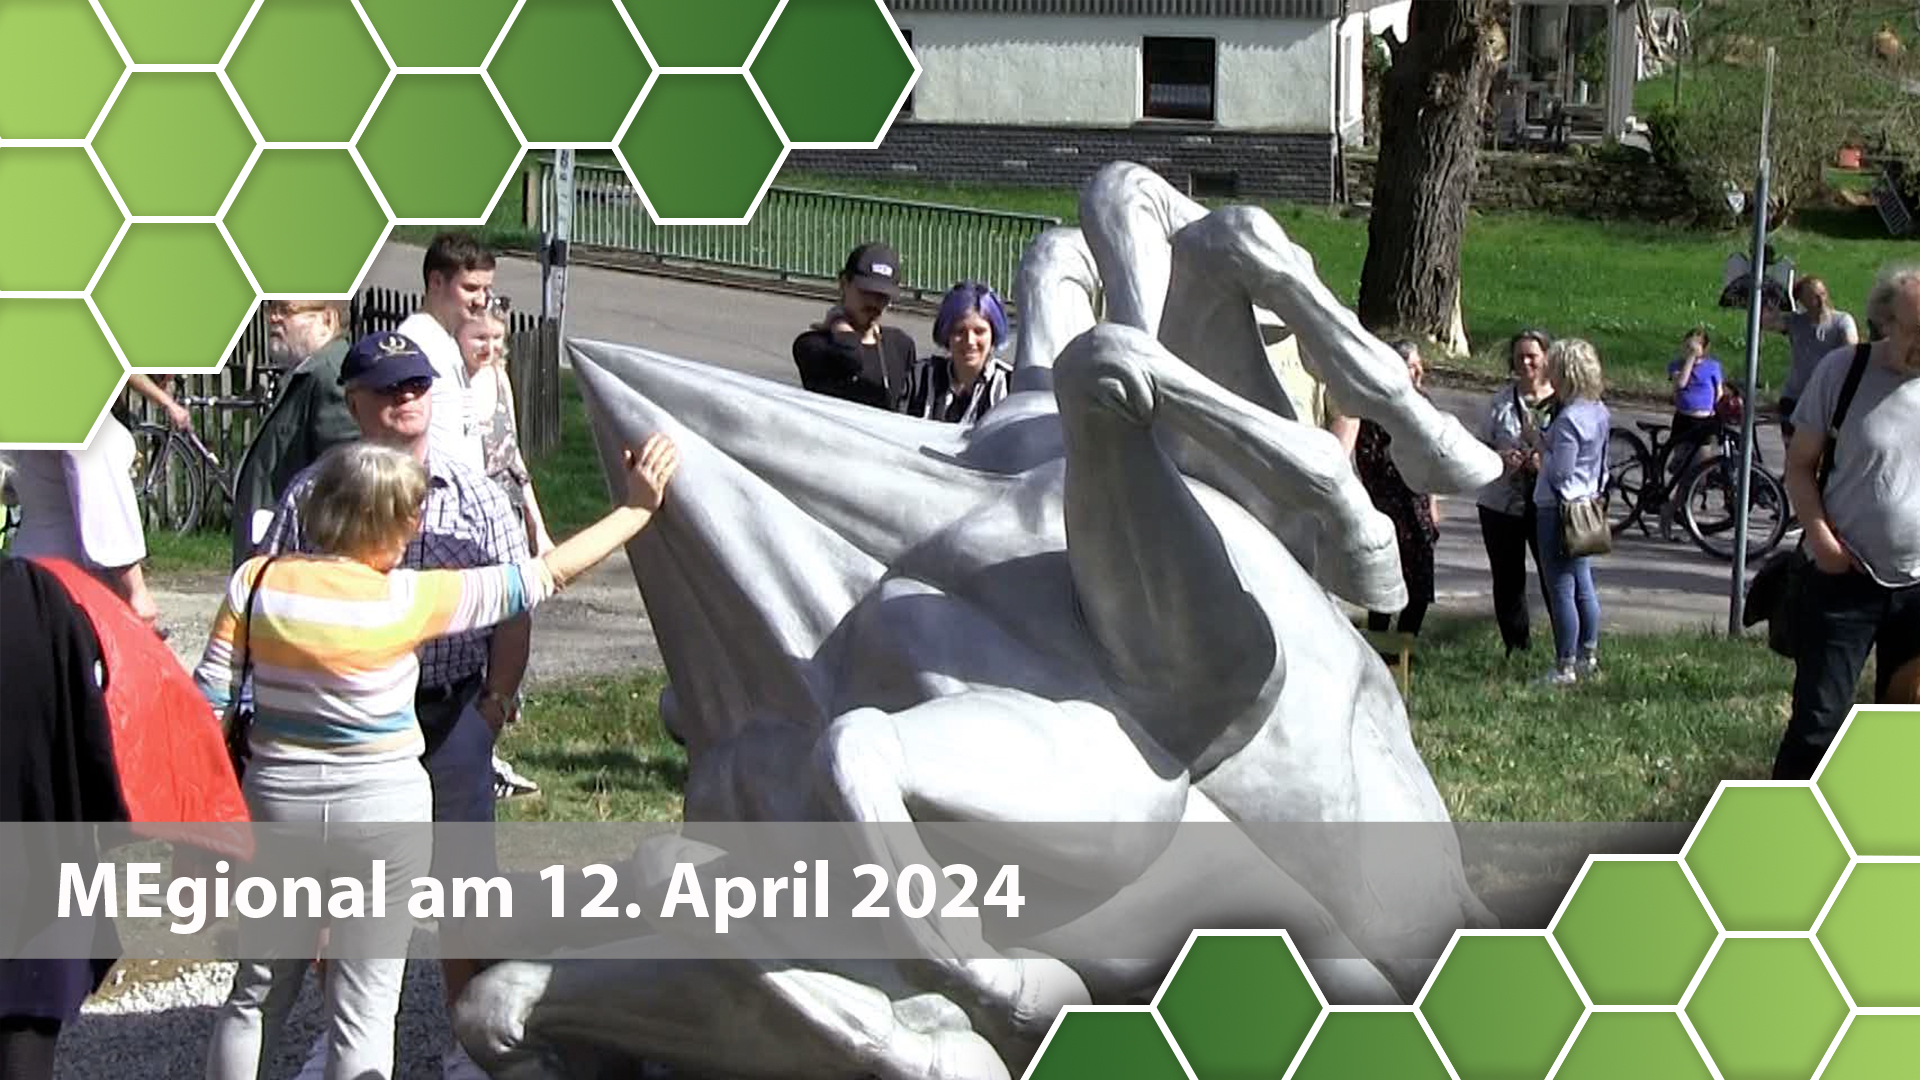 MEgional am 12. April 2024 mit der Einweihung des Polygonalen Pferds im Dorfmuseum Gahlenz